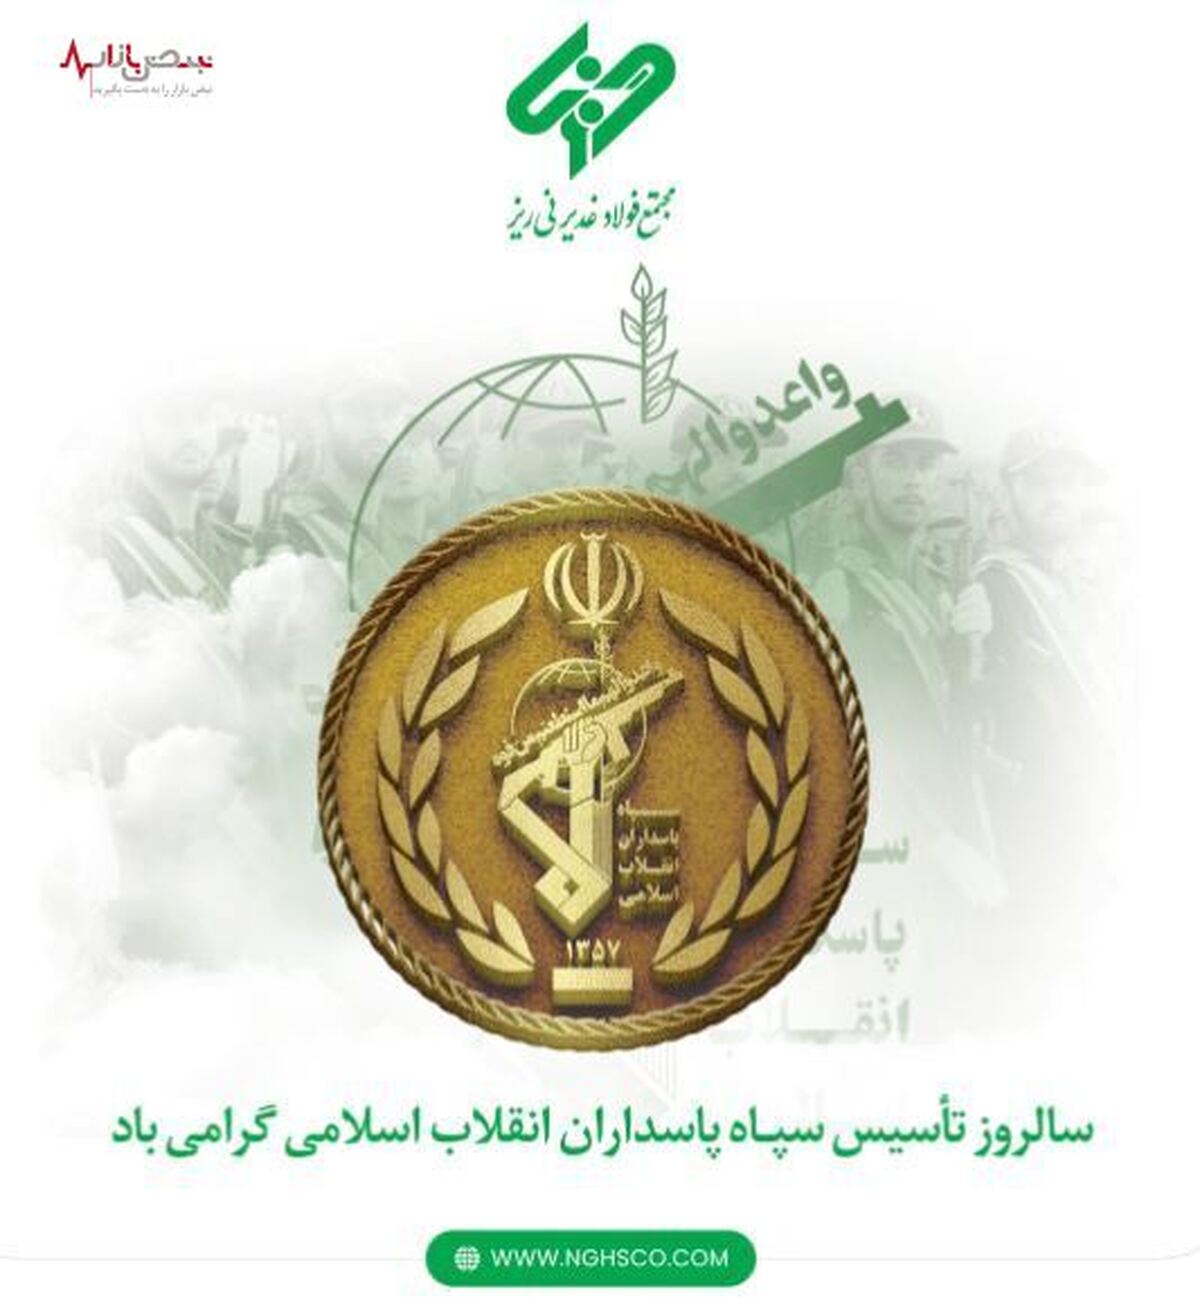 به مناسبت فرارسیدن ۲ اردیبهشت ماه سالروز تاسیس سپاه پاسداران انقلاب اسلامی ایران